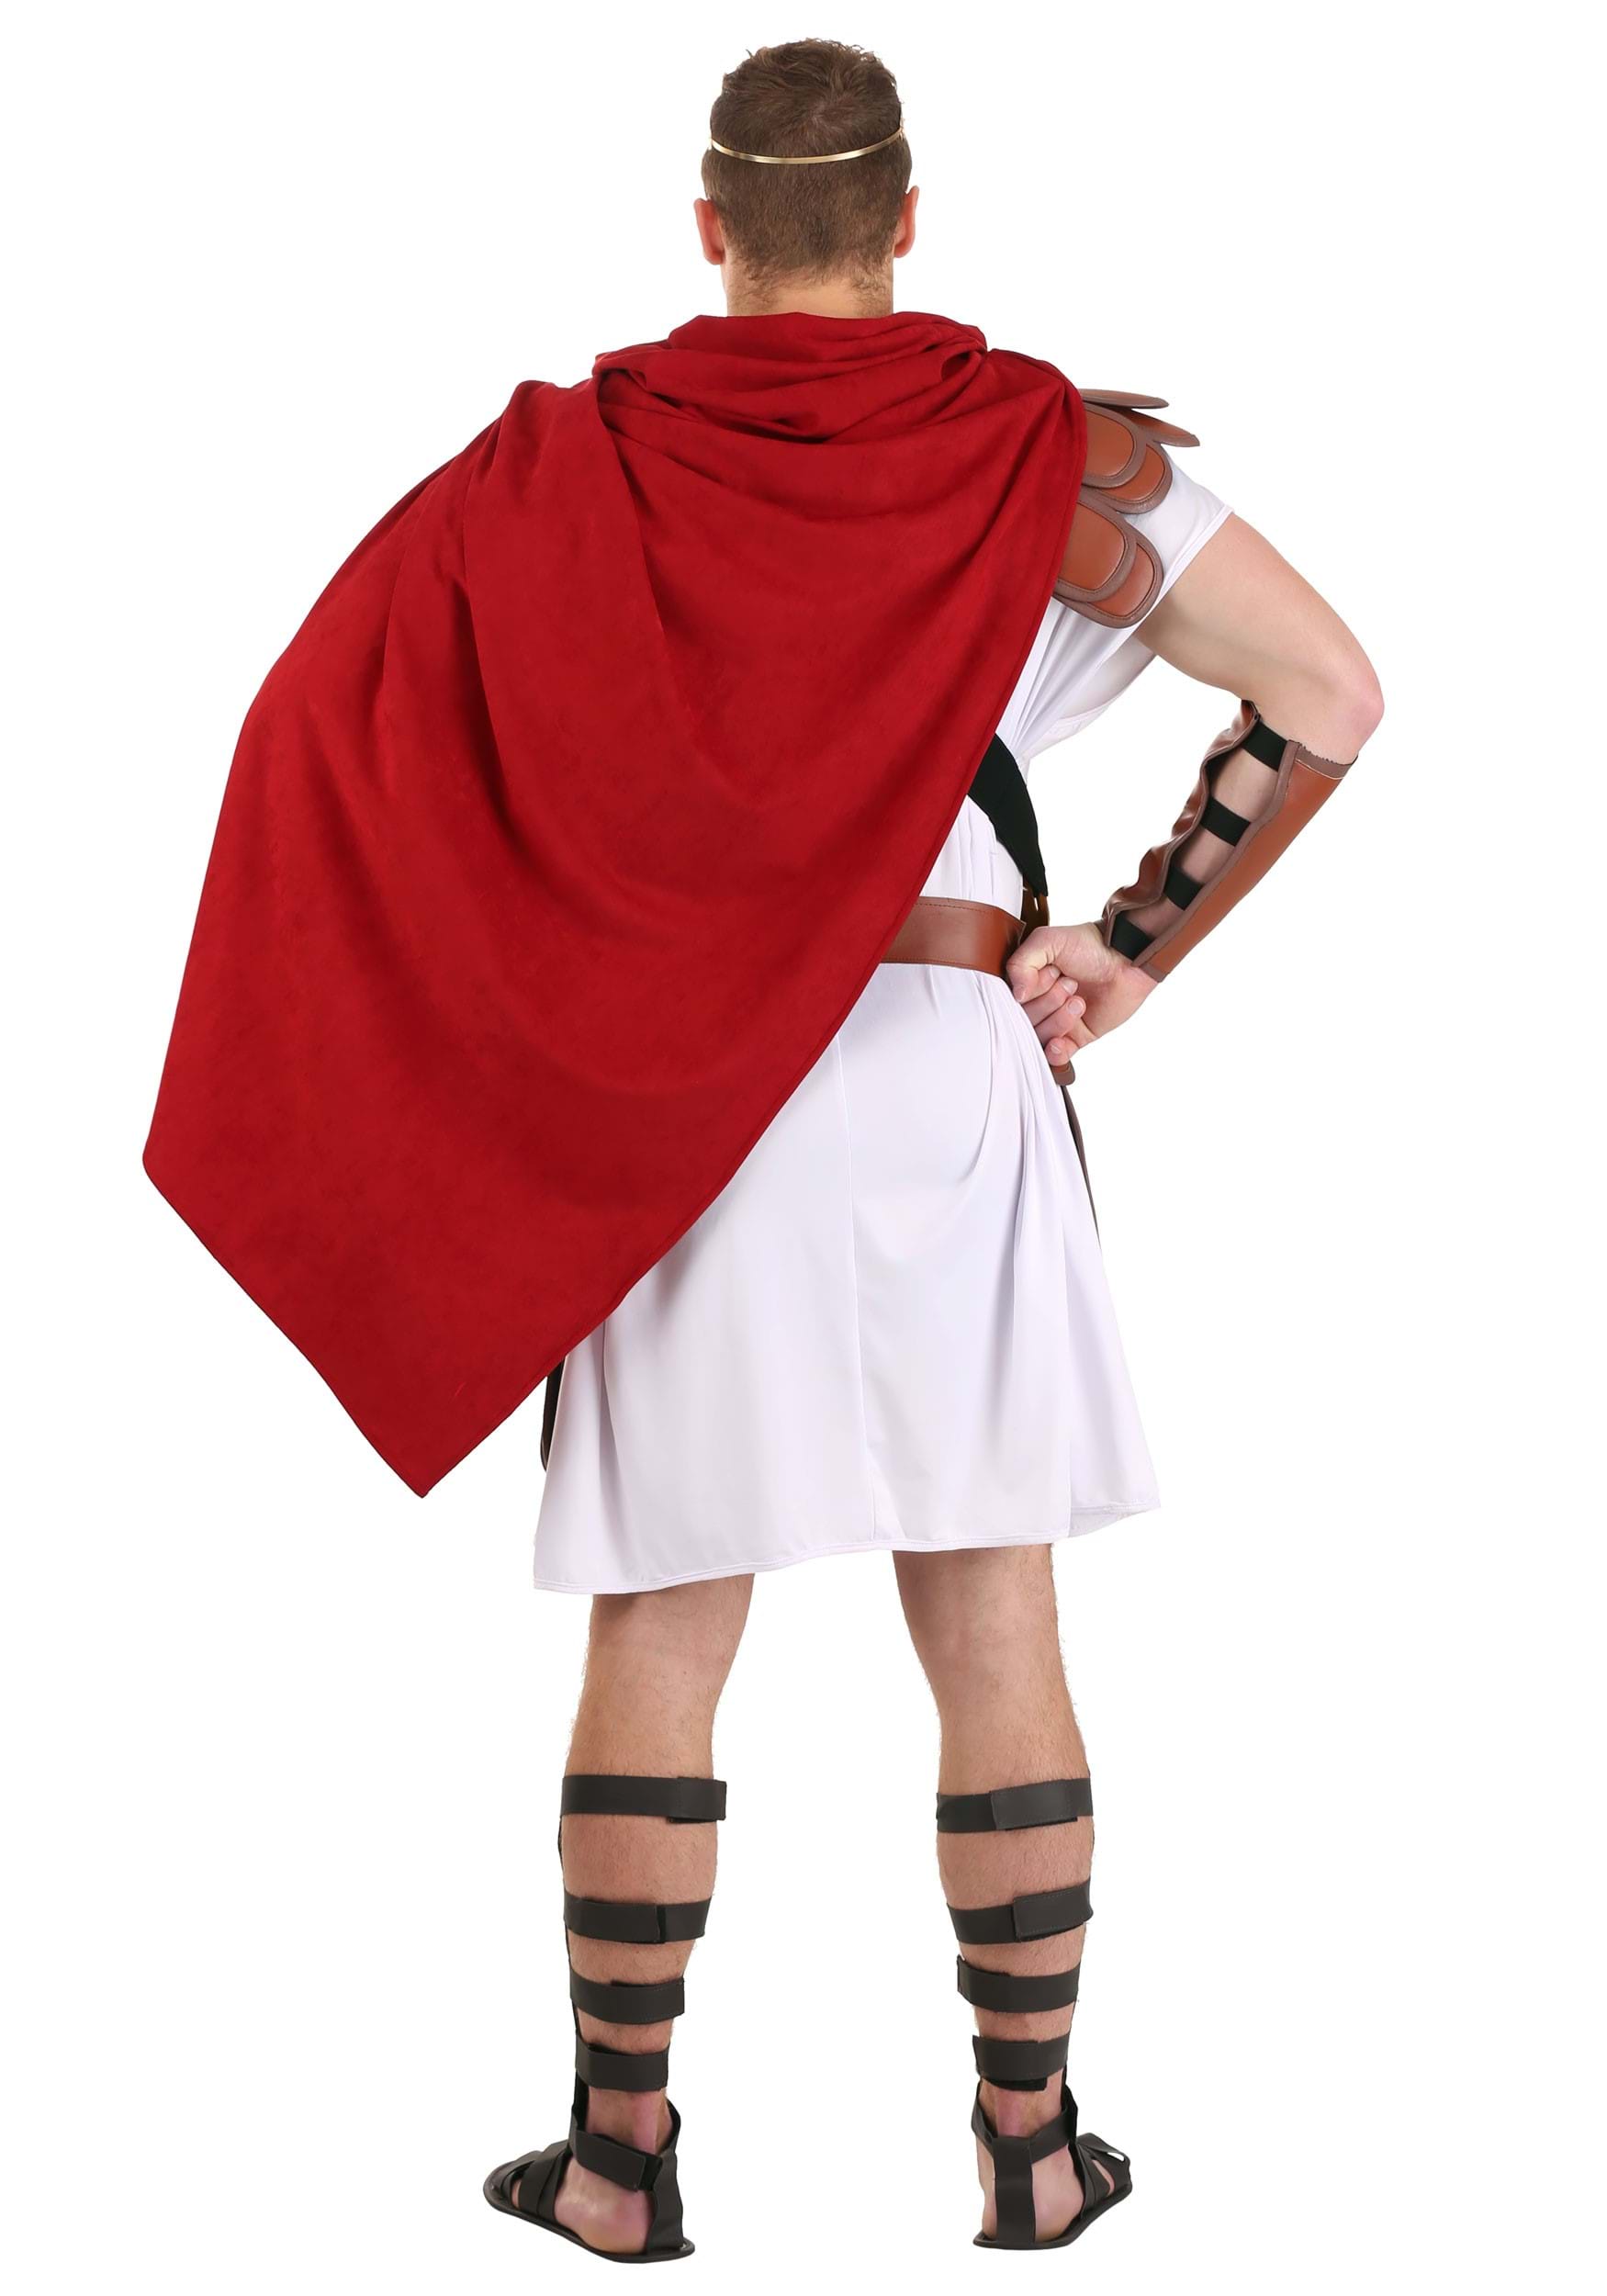 Imperial Caesar Men's Costume